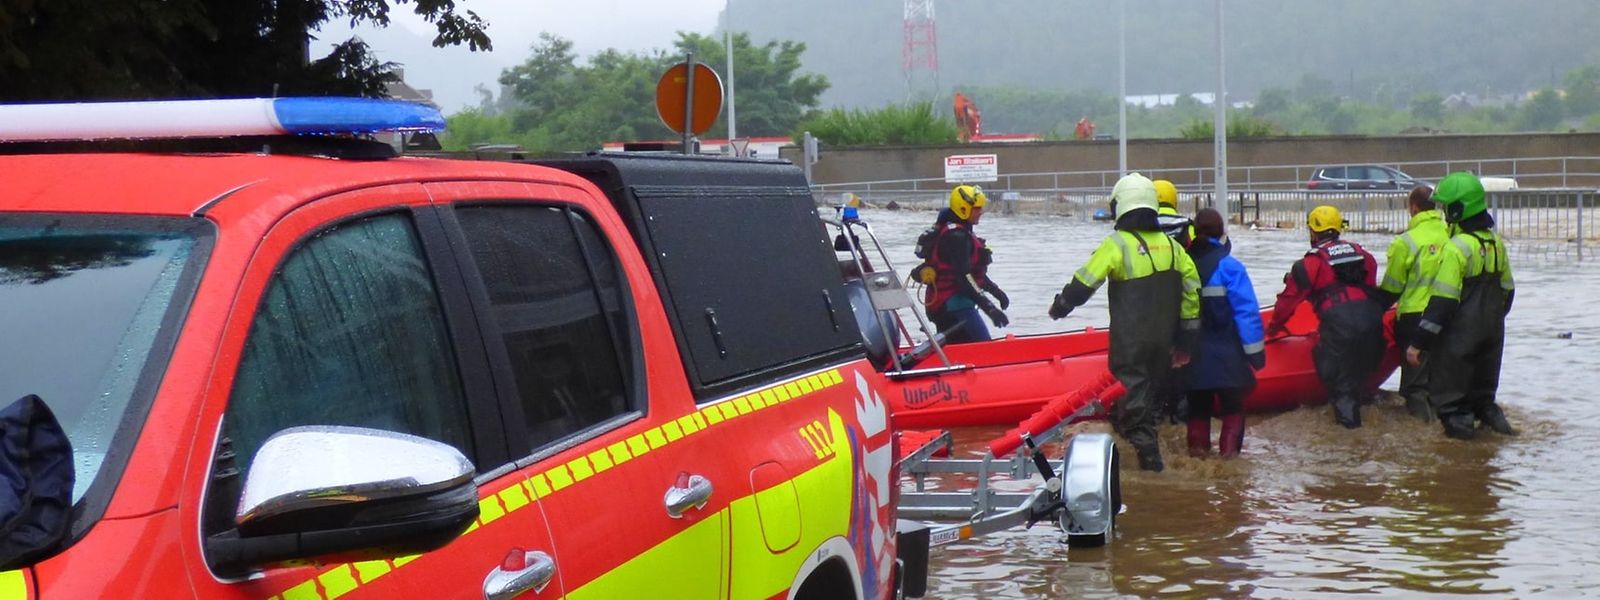 Le matériel et les pompiers du CGDIS en action en Belgique, lors des inondations de 2021.